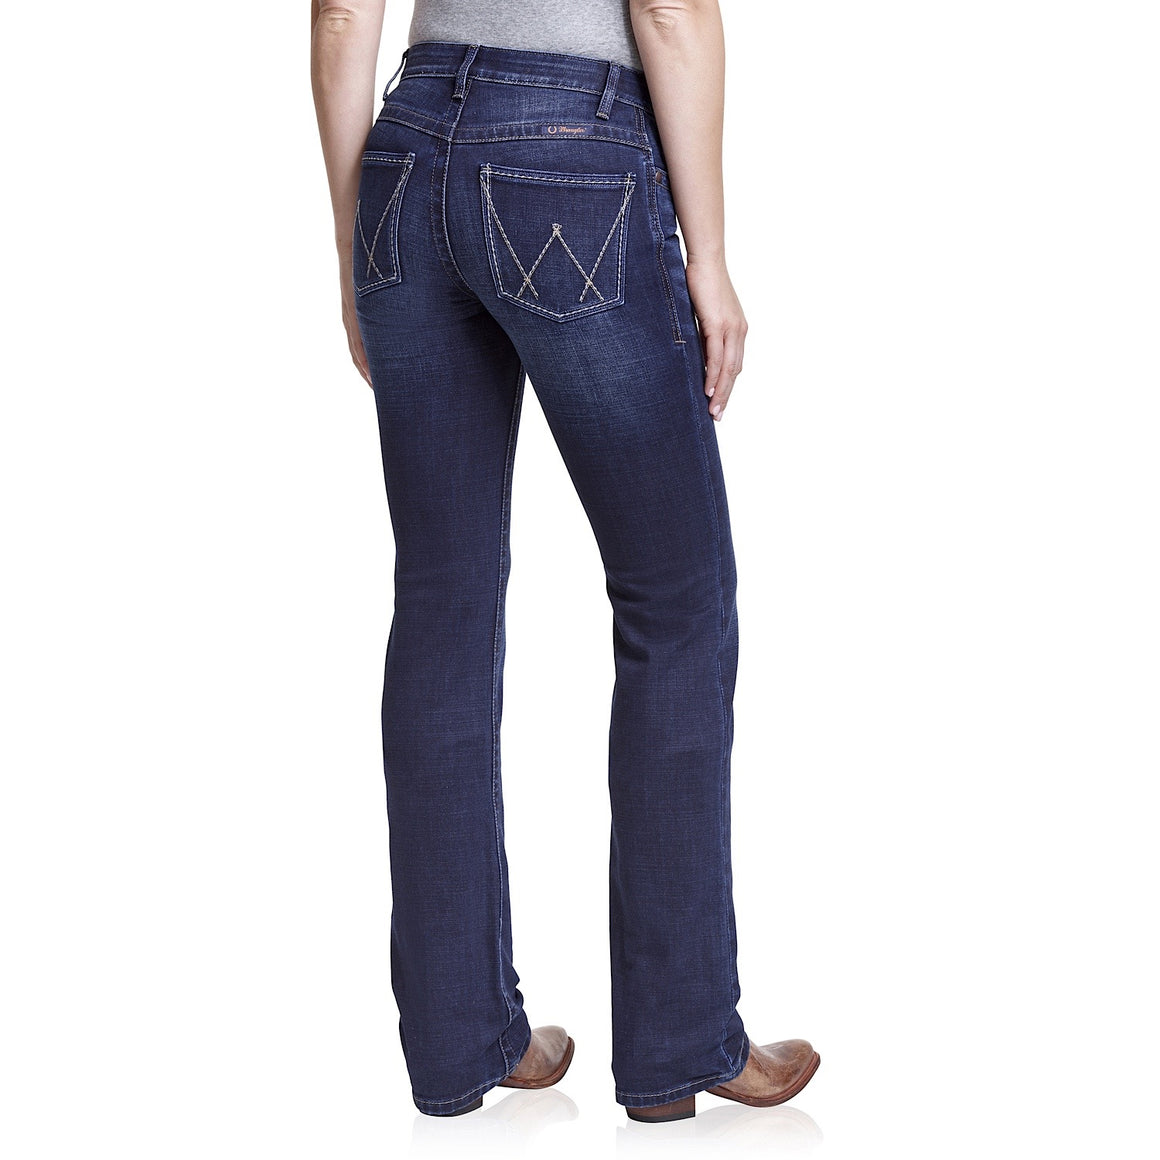 Buy Wrangler Womens Jeans - The Stable Door